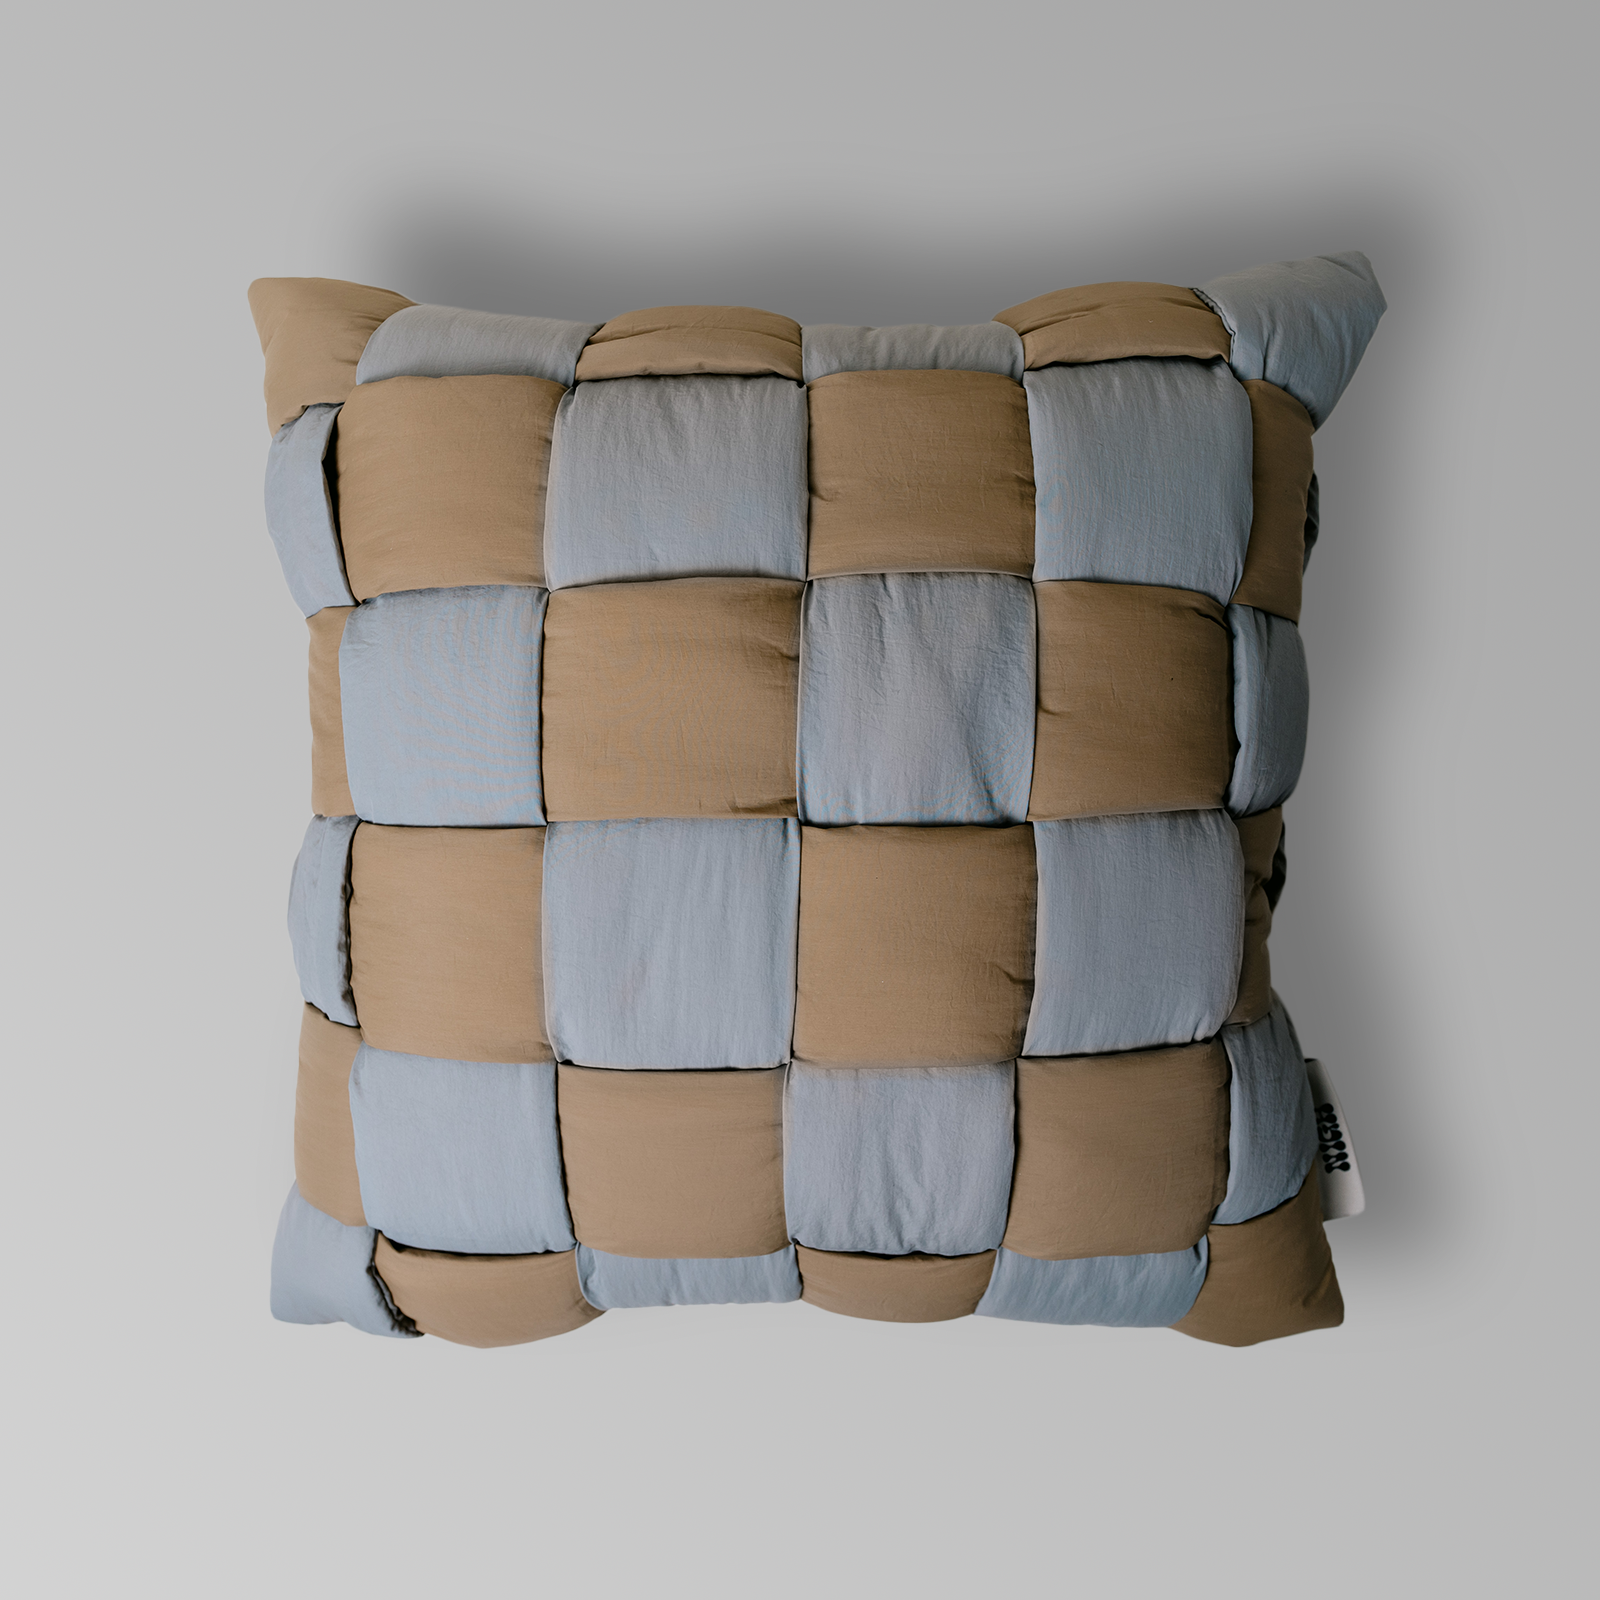 The Weave Pillow - Gravel